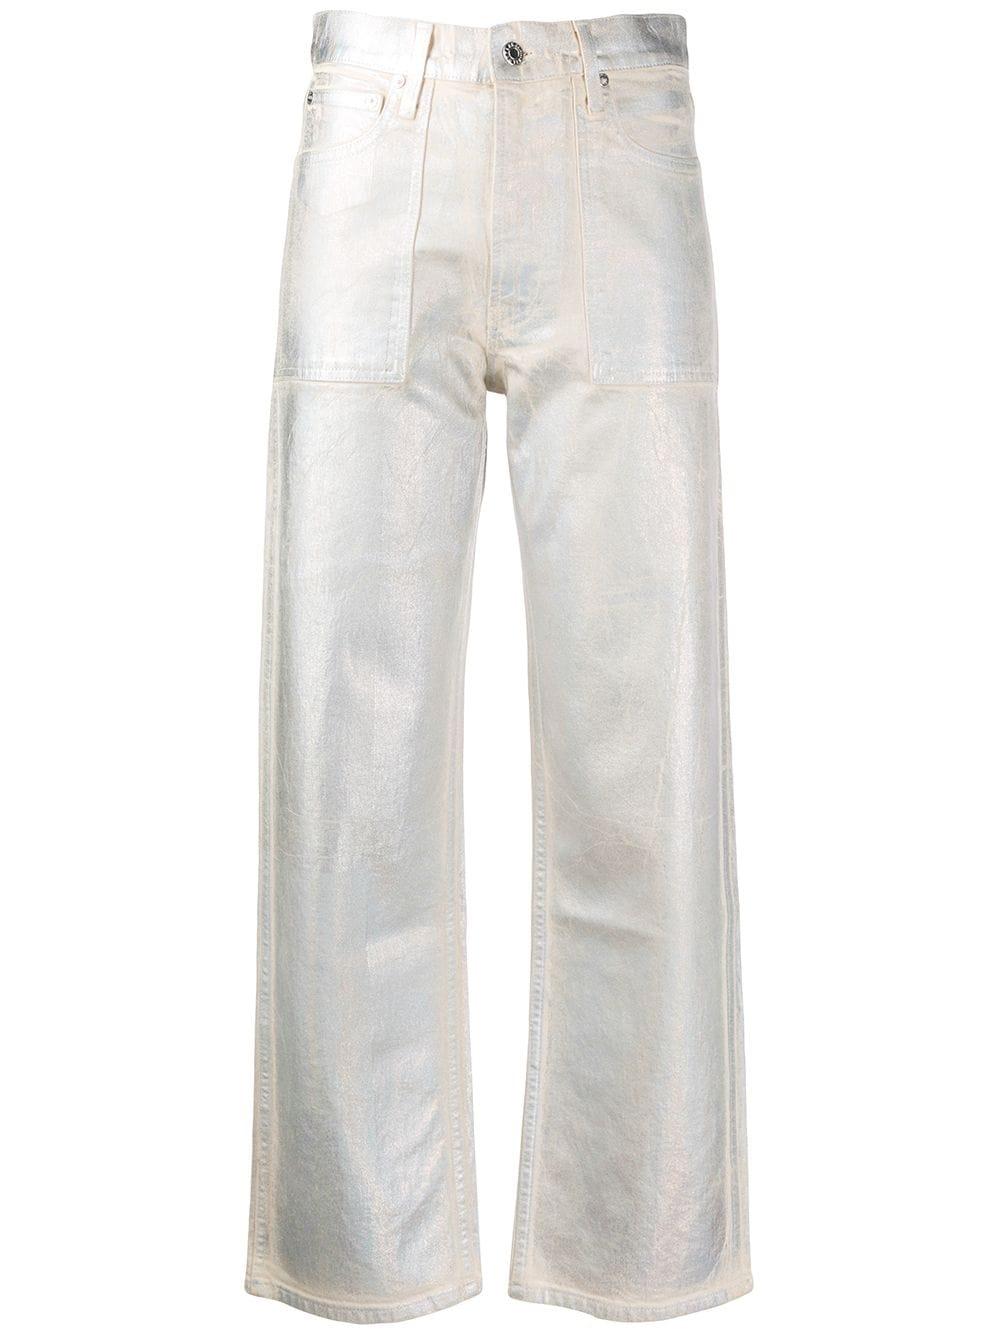 Helmut Lang Denim Metallic Straight-leg Jeans in White - Lyst